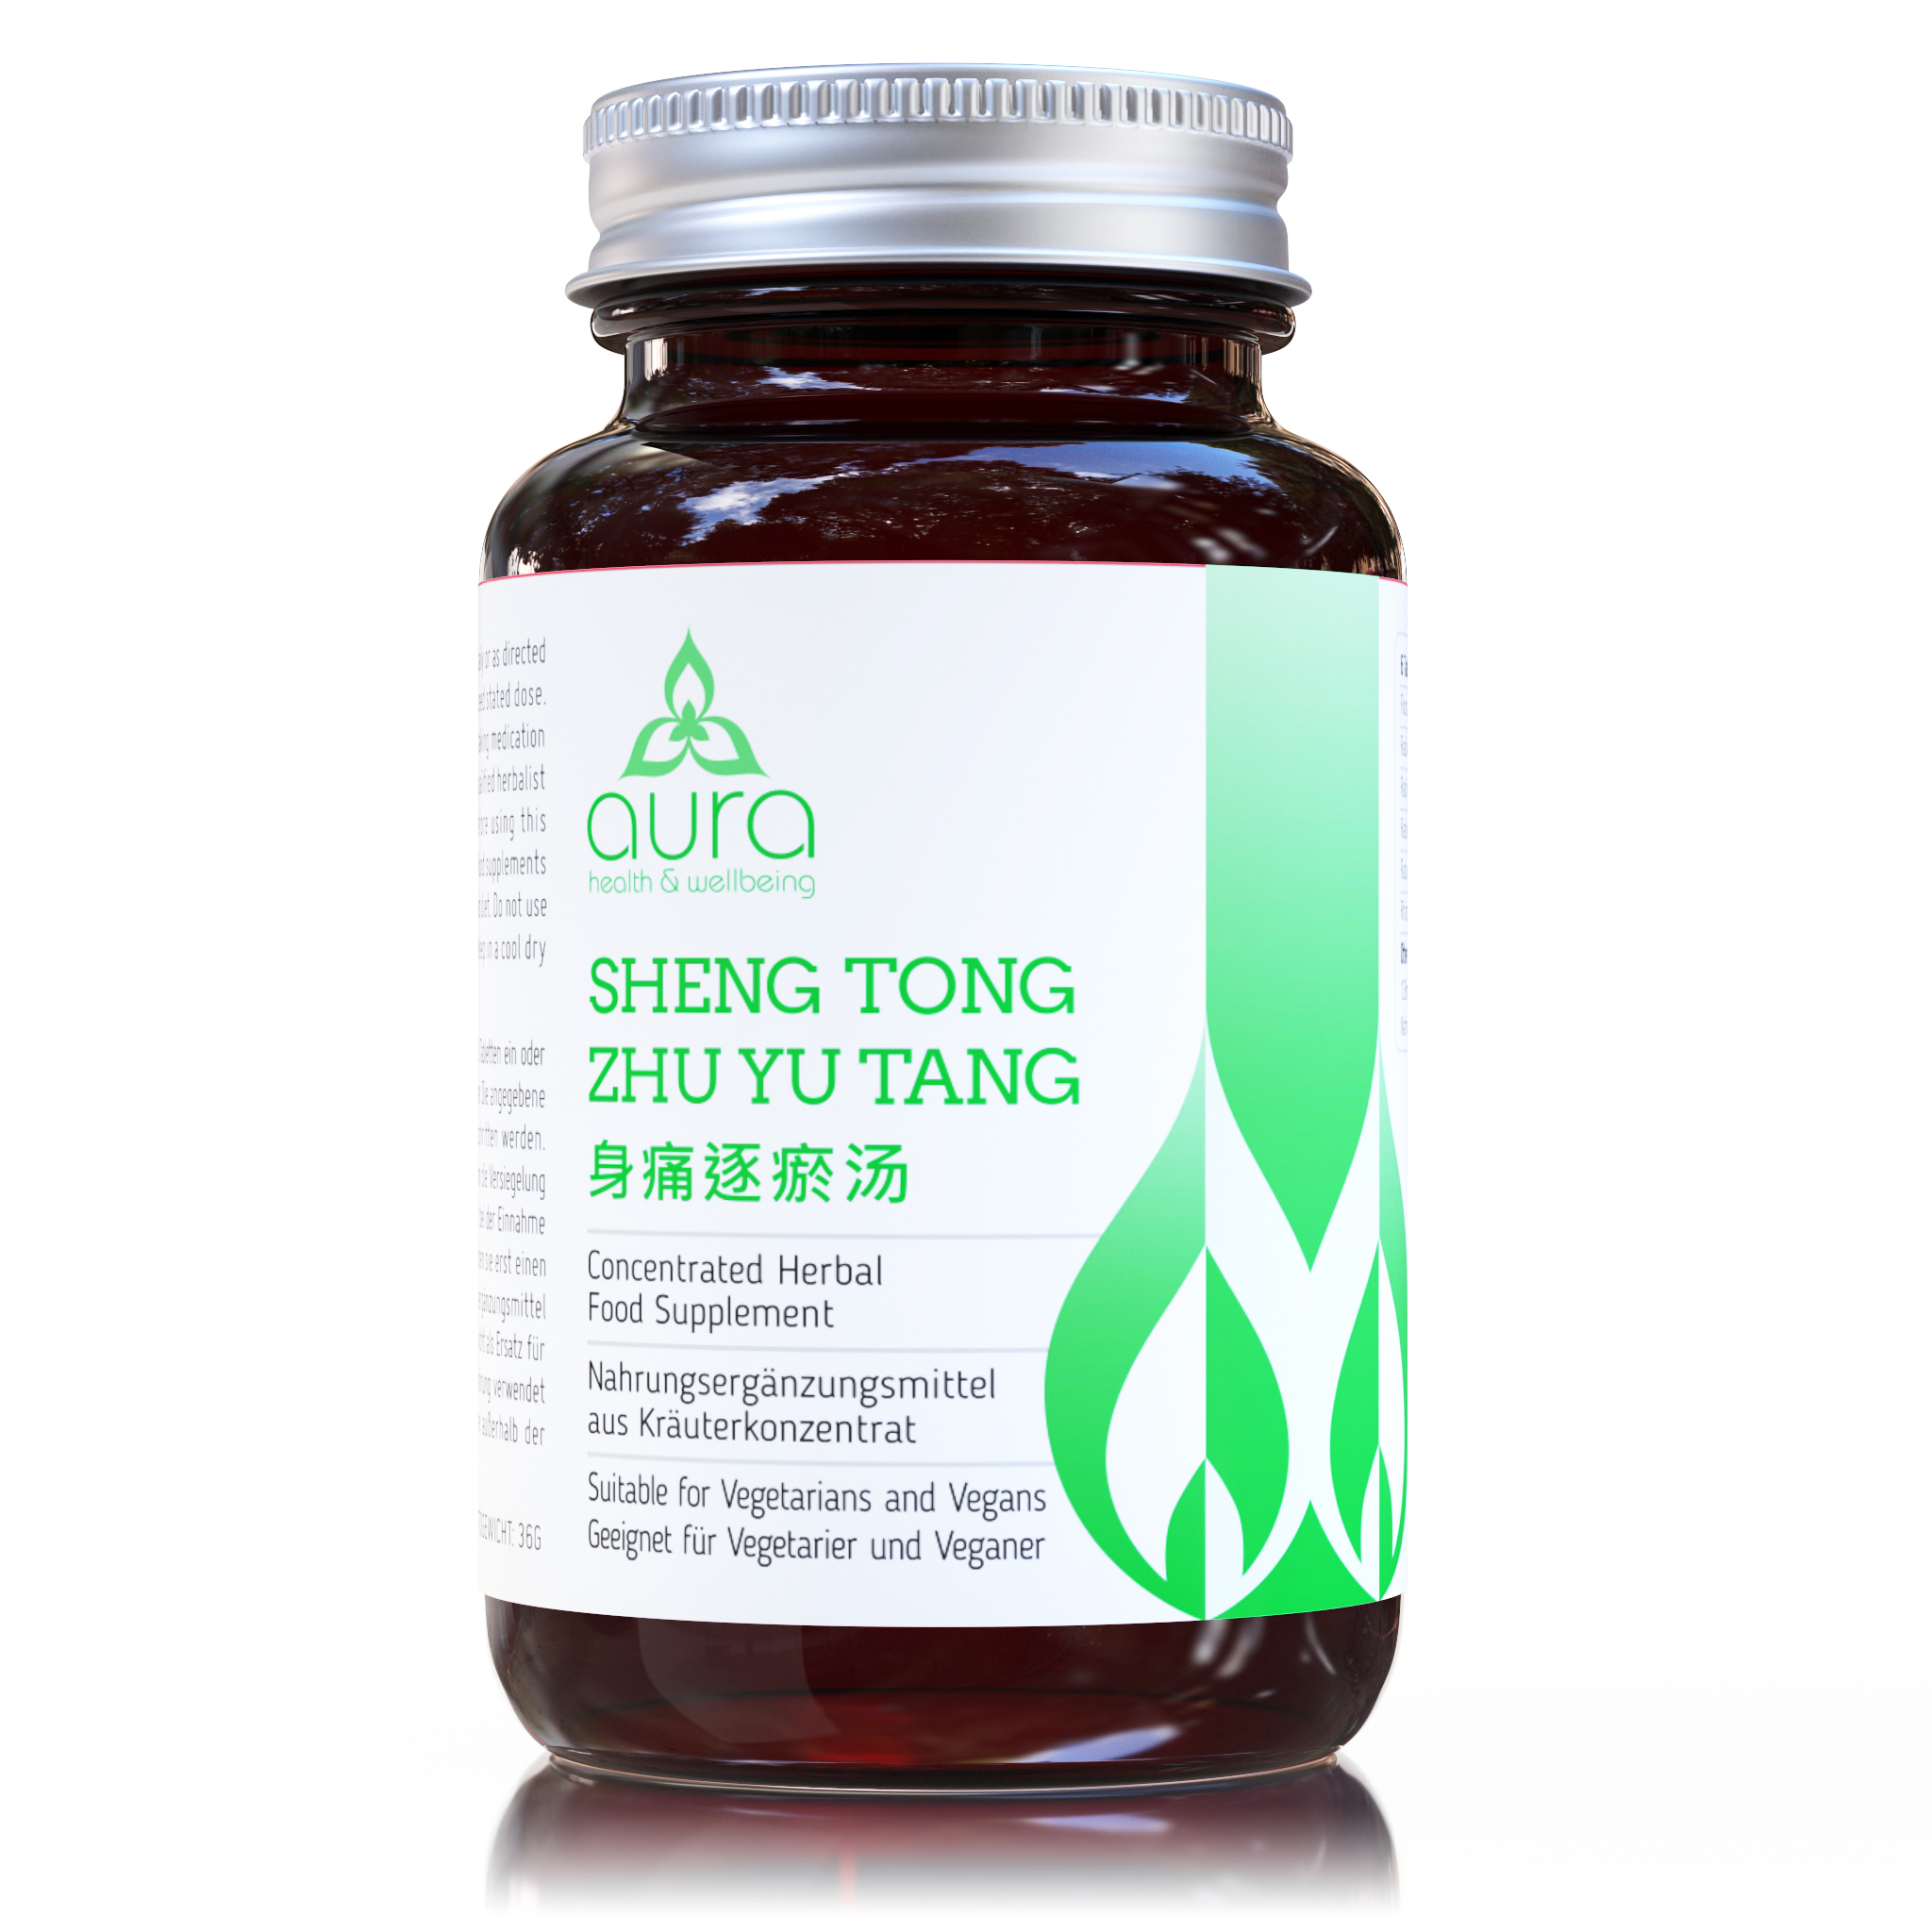 SHEN TONG ZHU YU TANG (tablets)